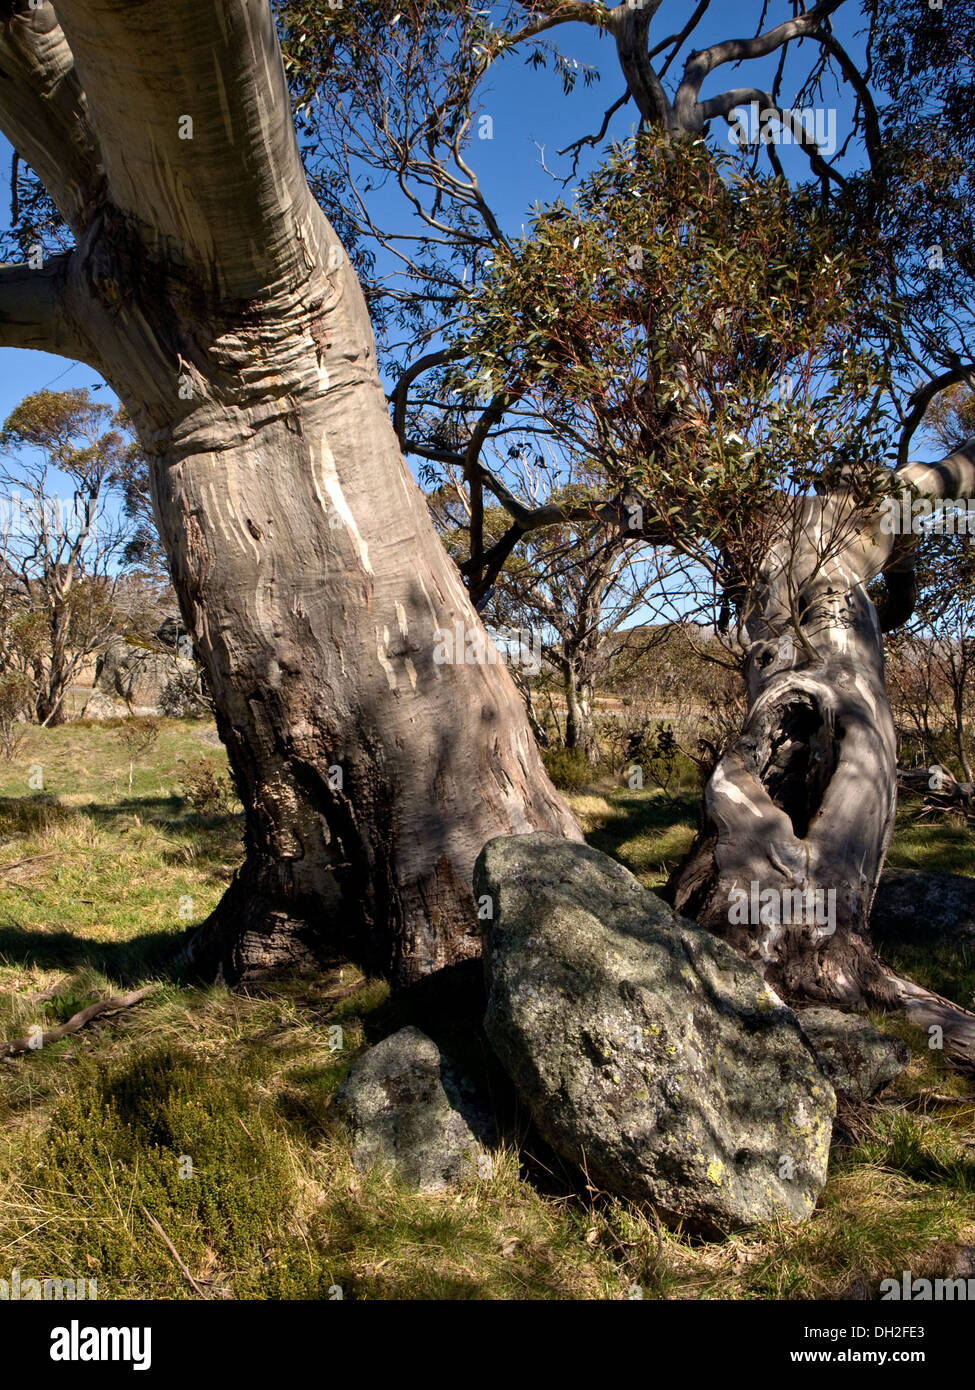 Snow gum (Eucalyptus), montagnes enneigées, NSW, Australie Banque D'Images